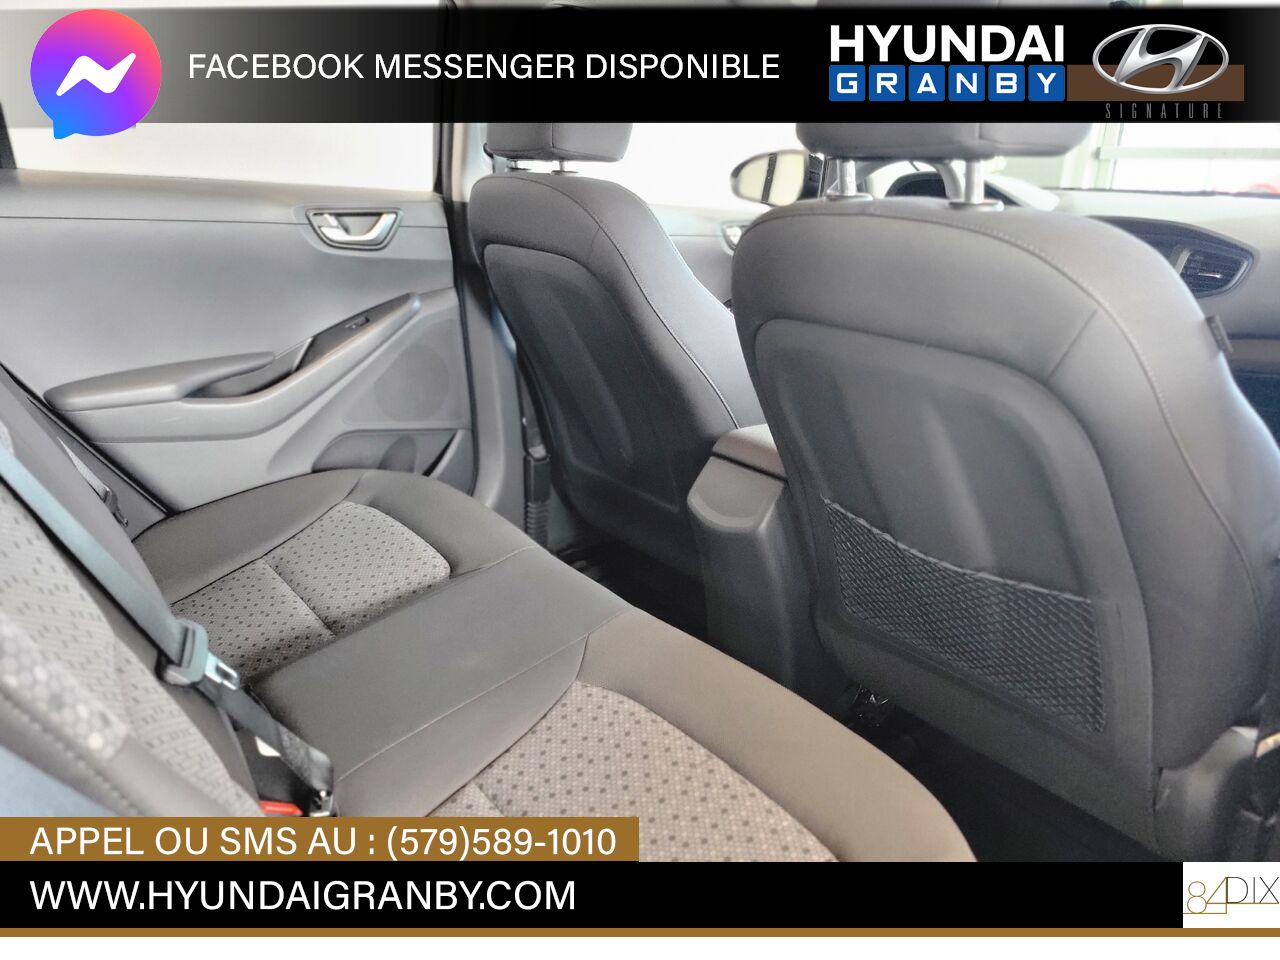 Hyundai Ioniq hybride 2019 Granby - photo #13